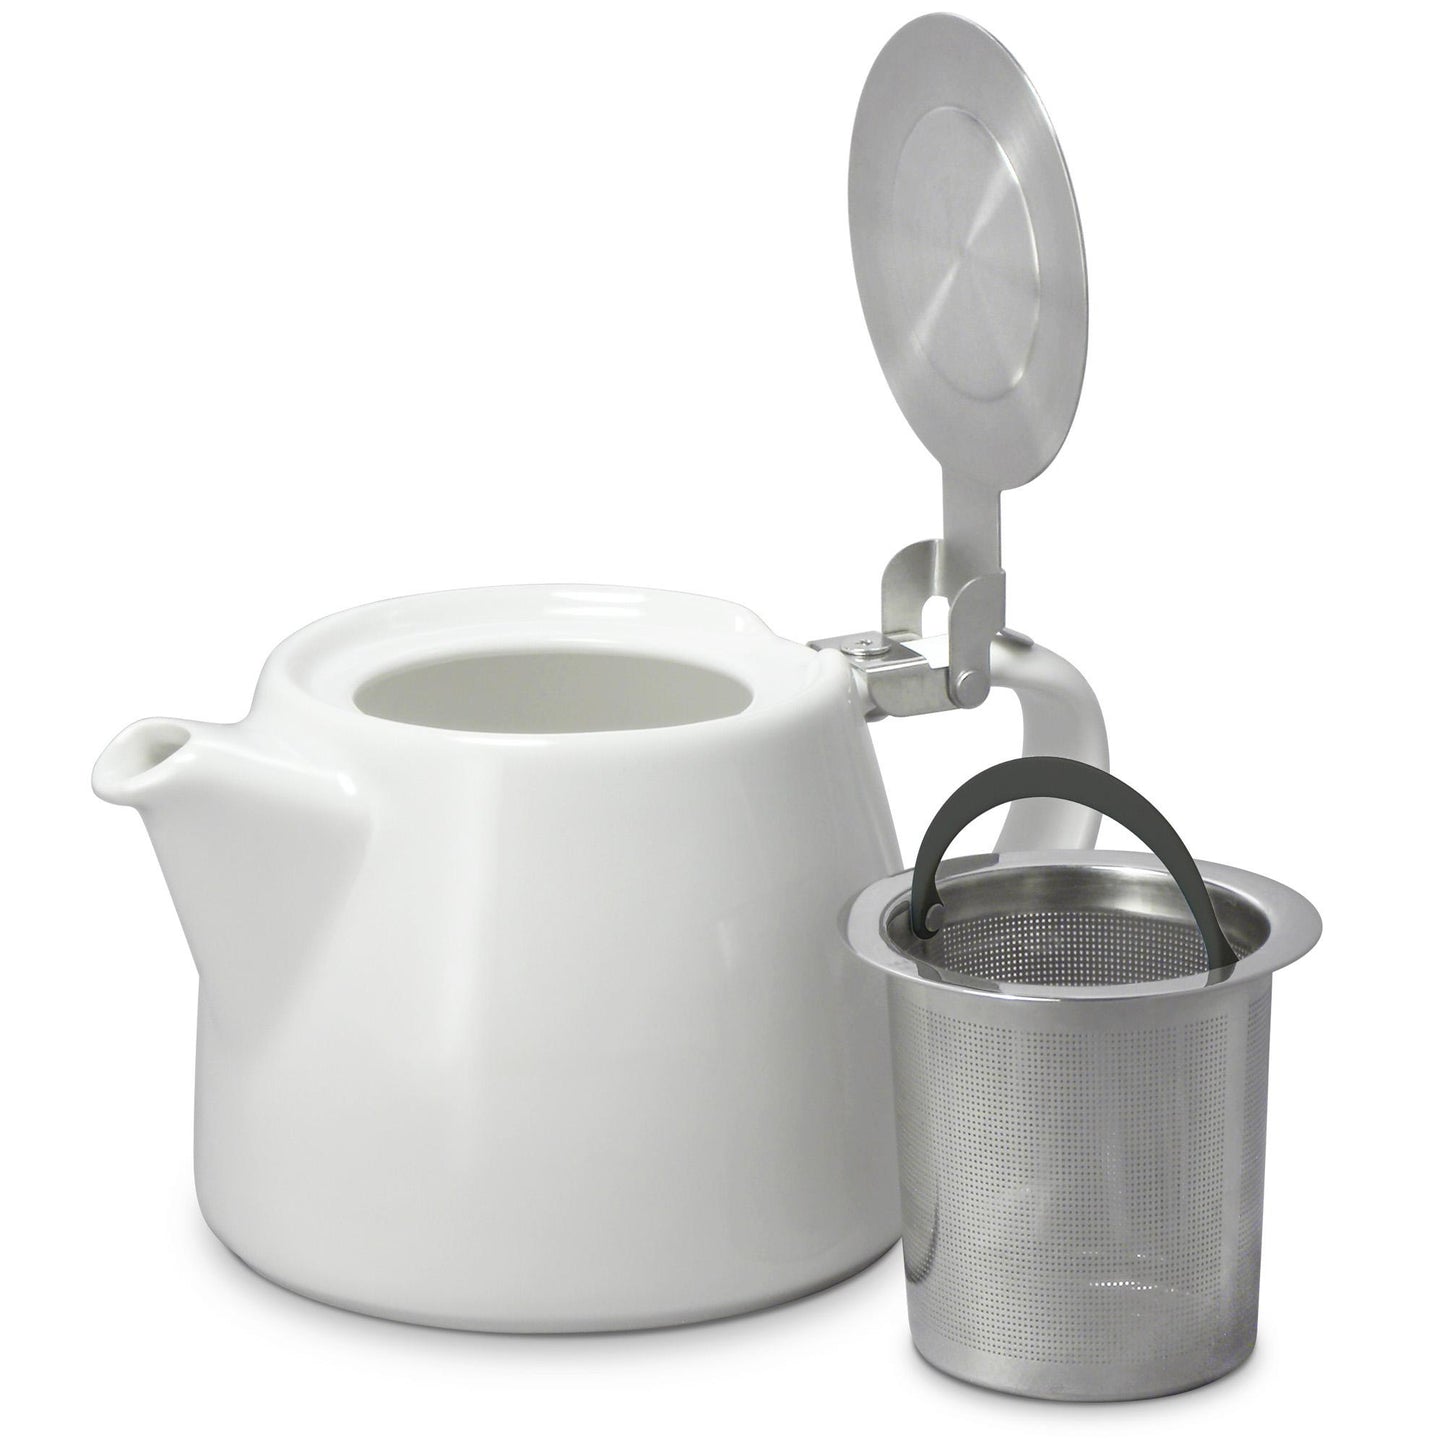 Teapot (Grey)